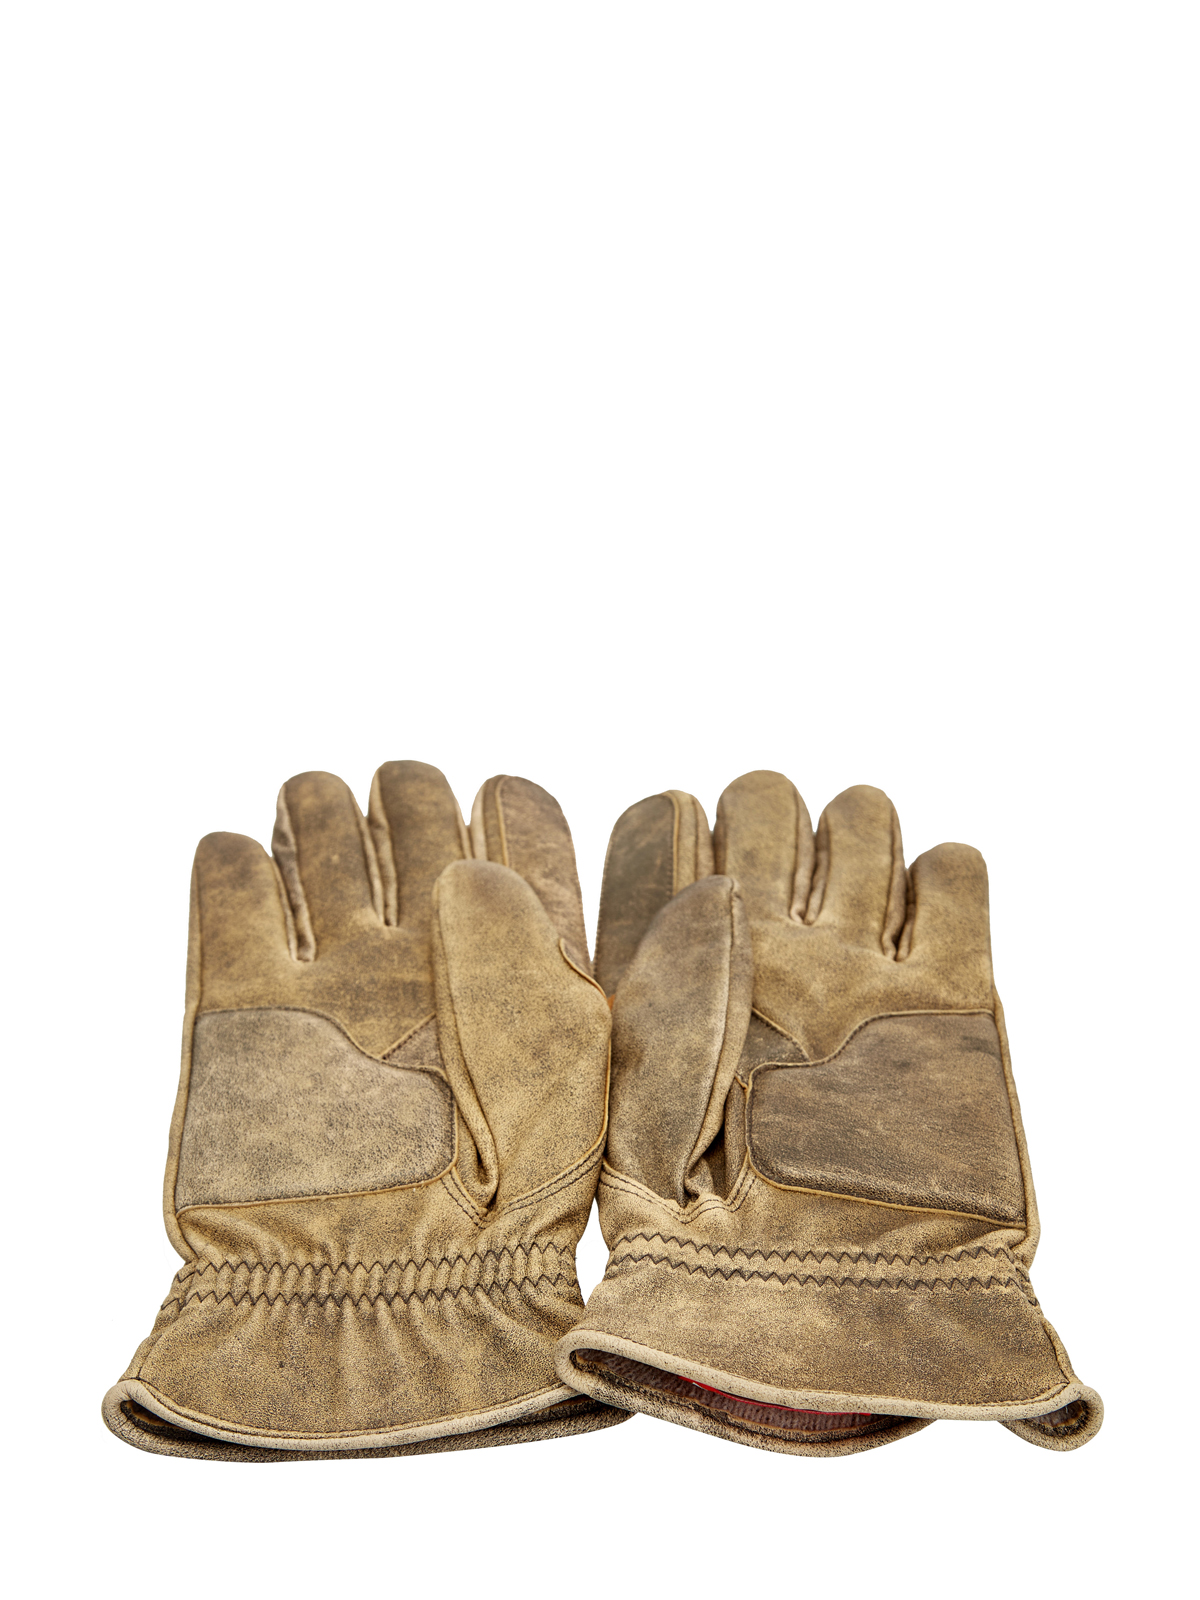 Кожаные перчатки G-Alb с подкладкой из шерсти и логотипом DIESEL, цвет коричневый, размер M - фото 3